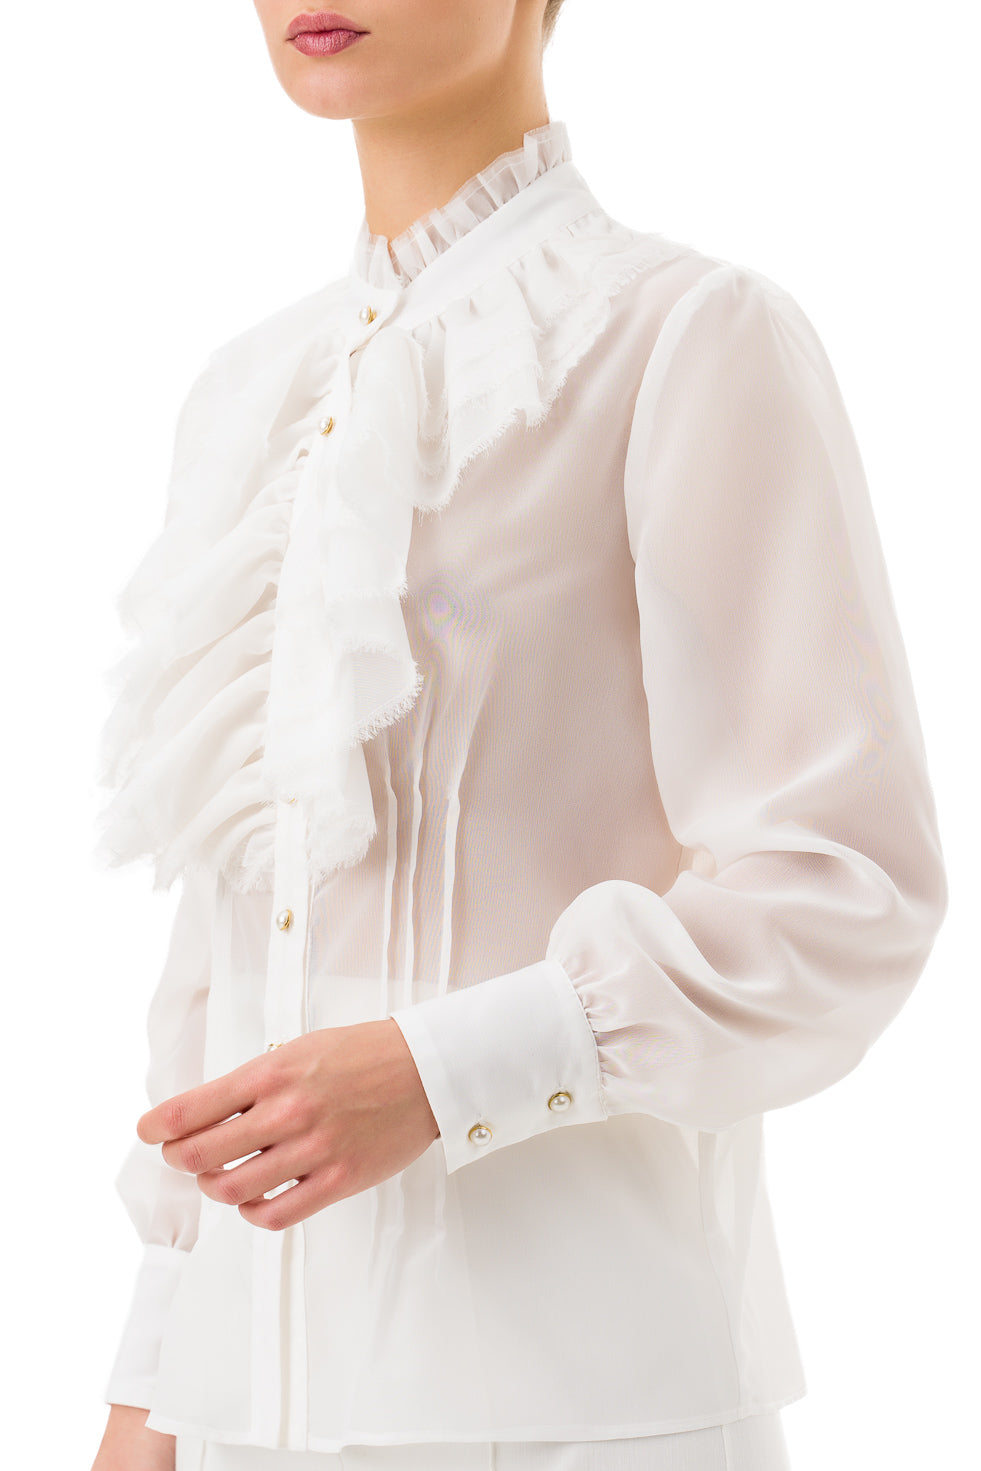 Meriah White Shirt